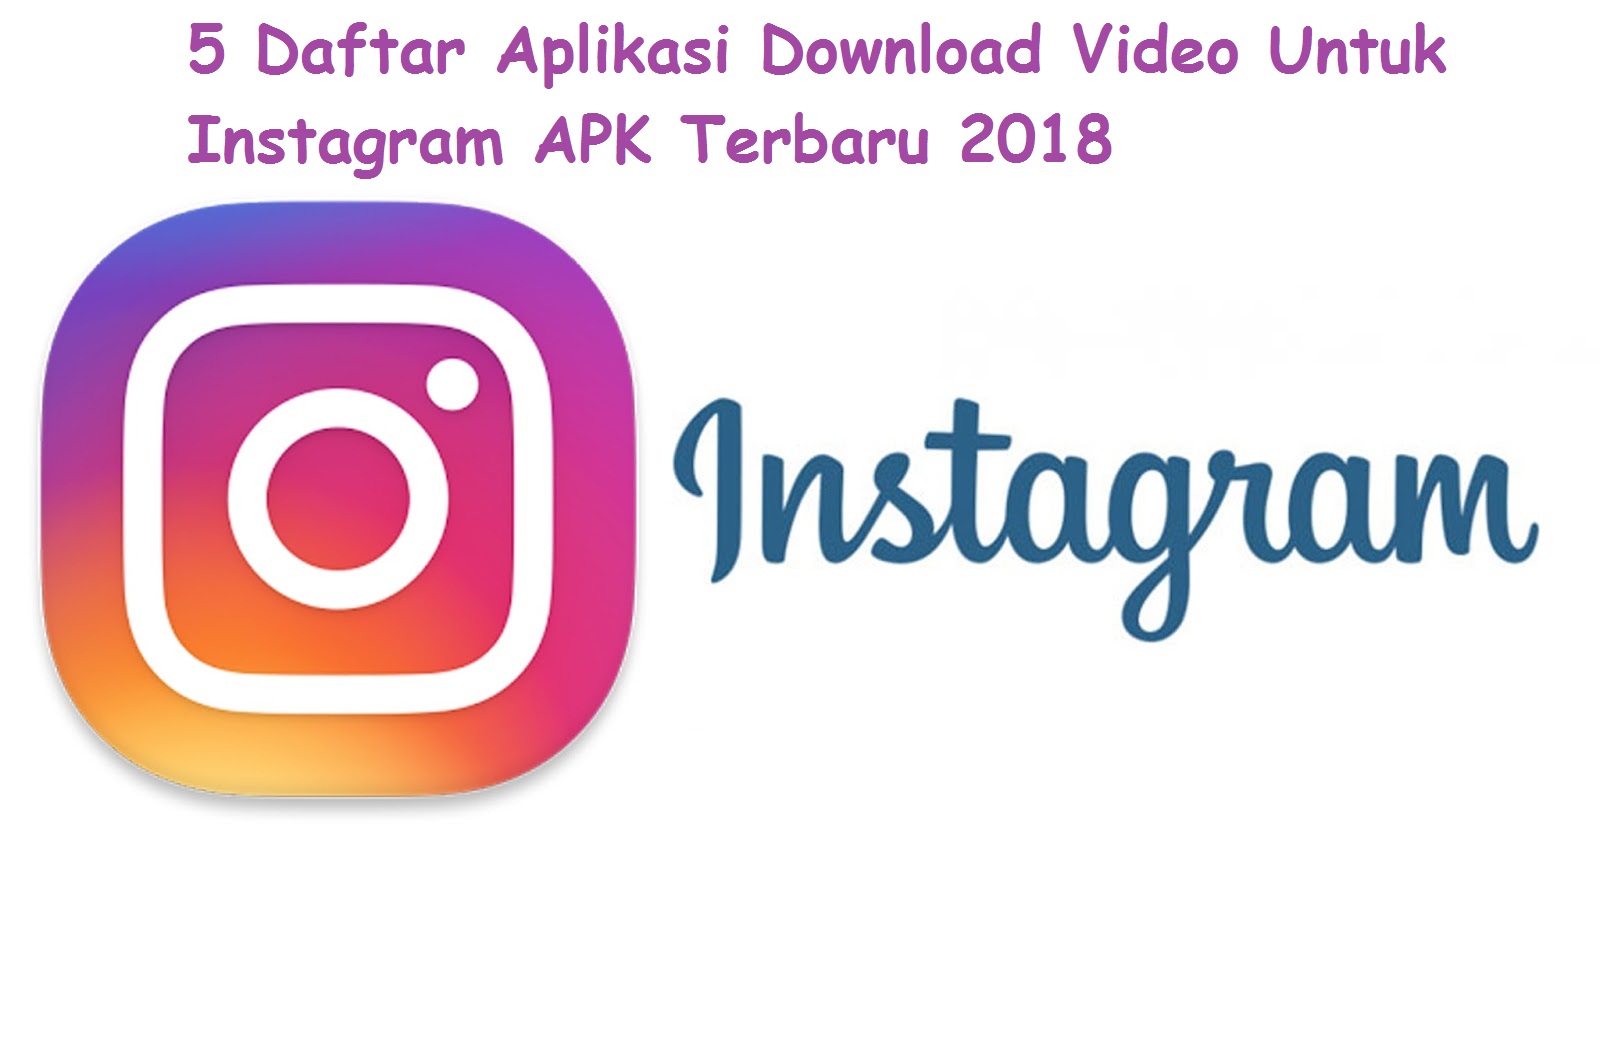 Daftar Aplikasi Download Video Untuk Instagram APK Terbaru 2018jpg